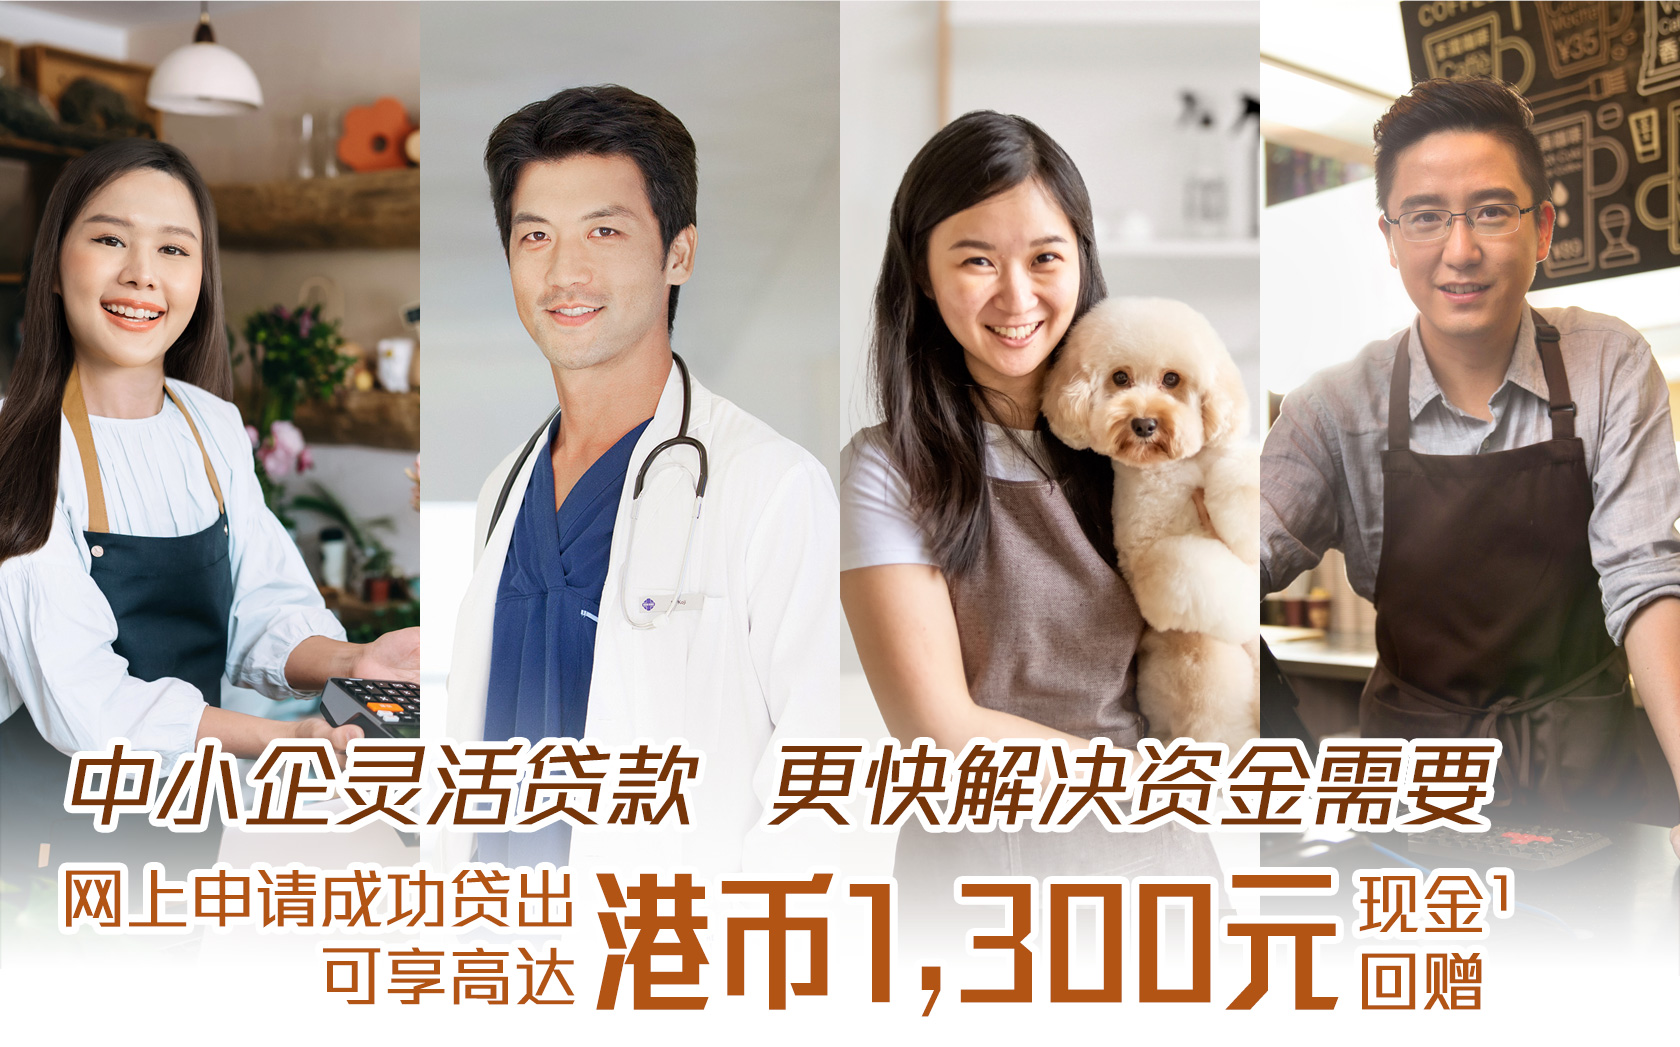 中小企灵活贷款   更快解决资金需要
网上申请成功贷出可享高达HK$1,300礼券